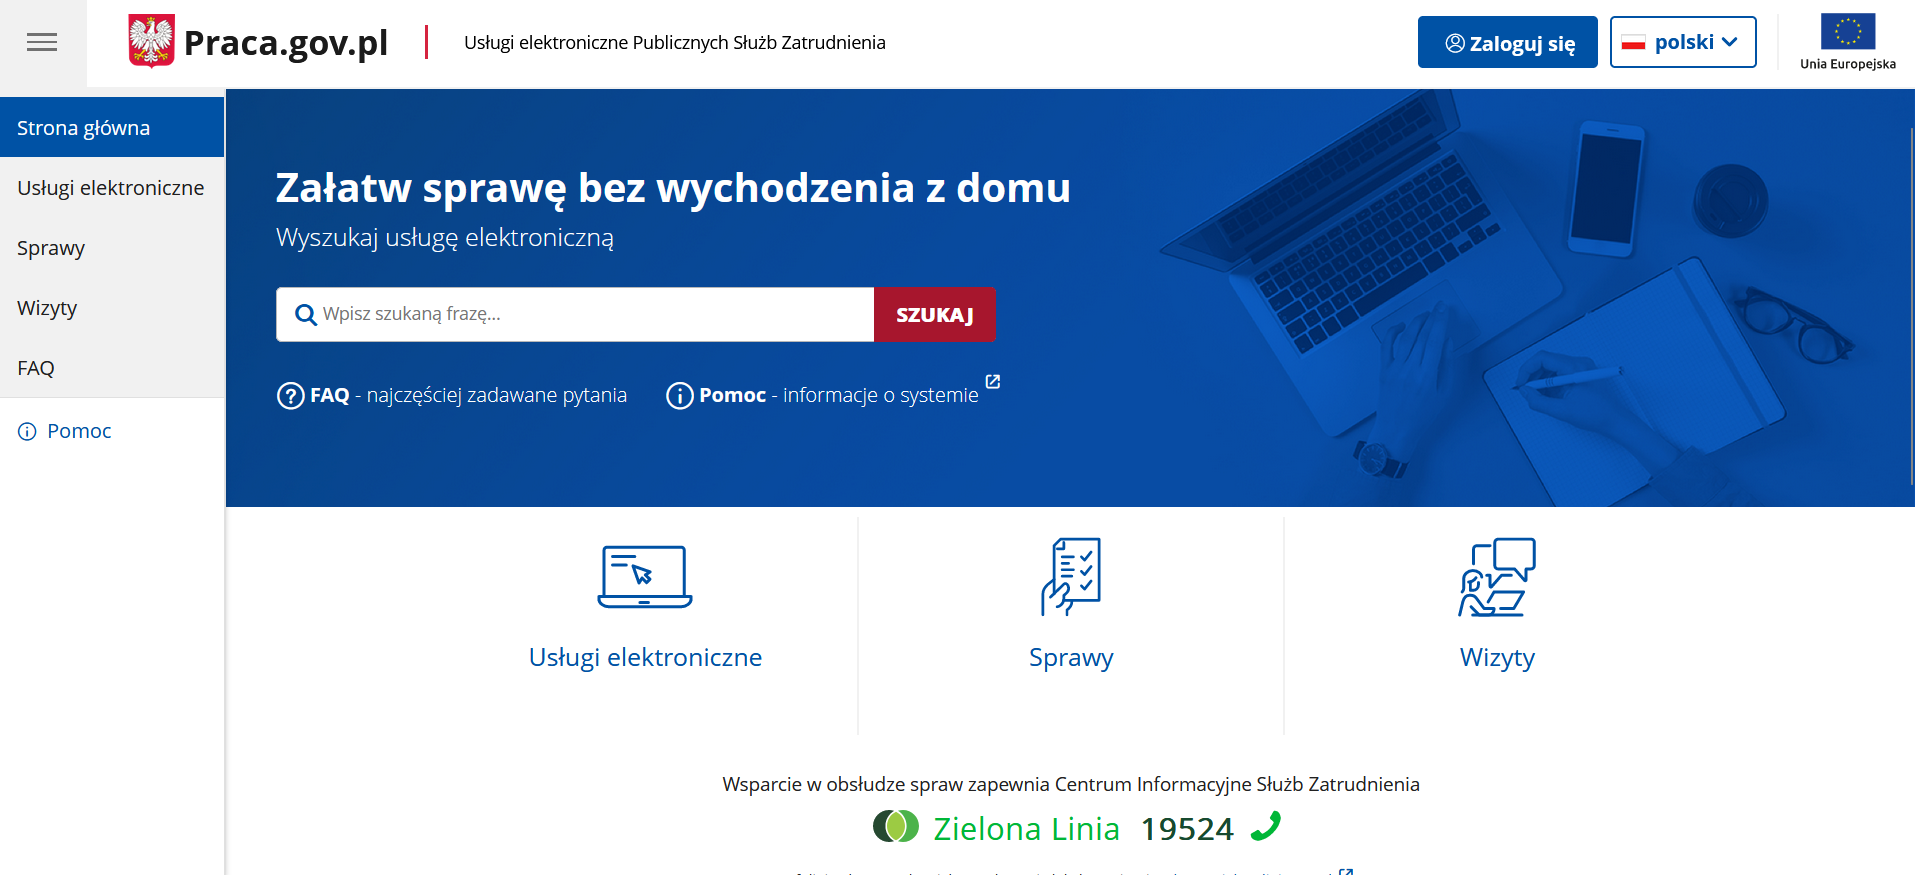 nowa strona praca.gov.pl